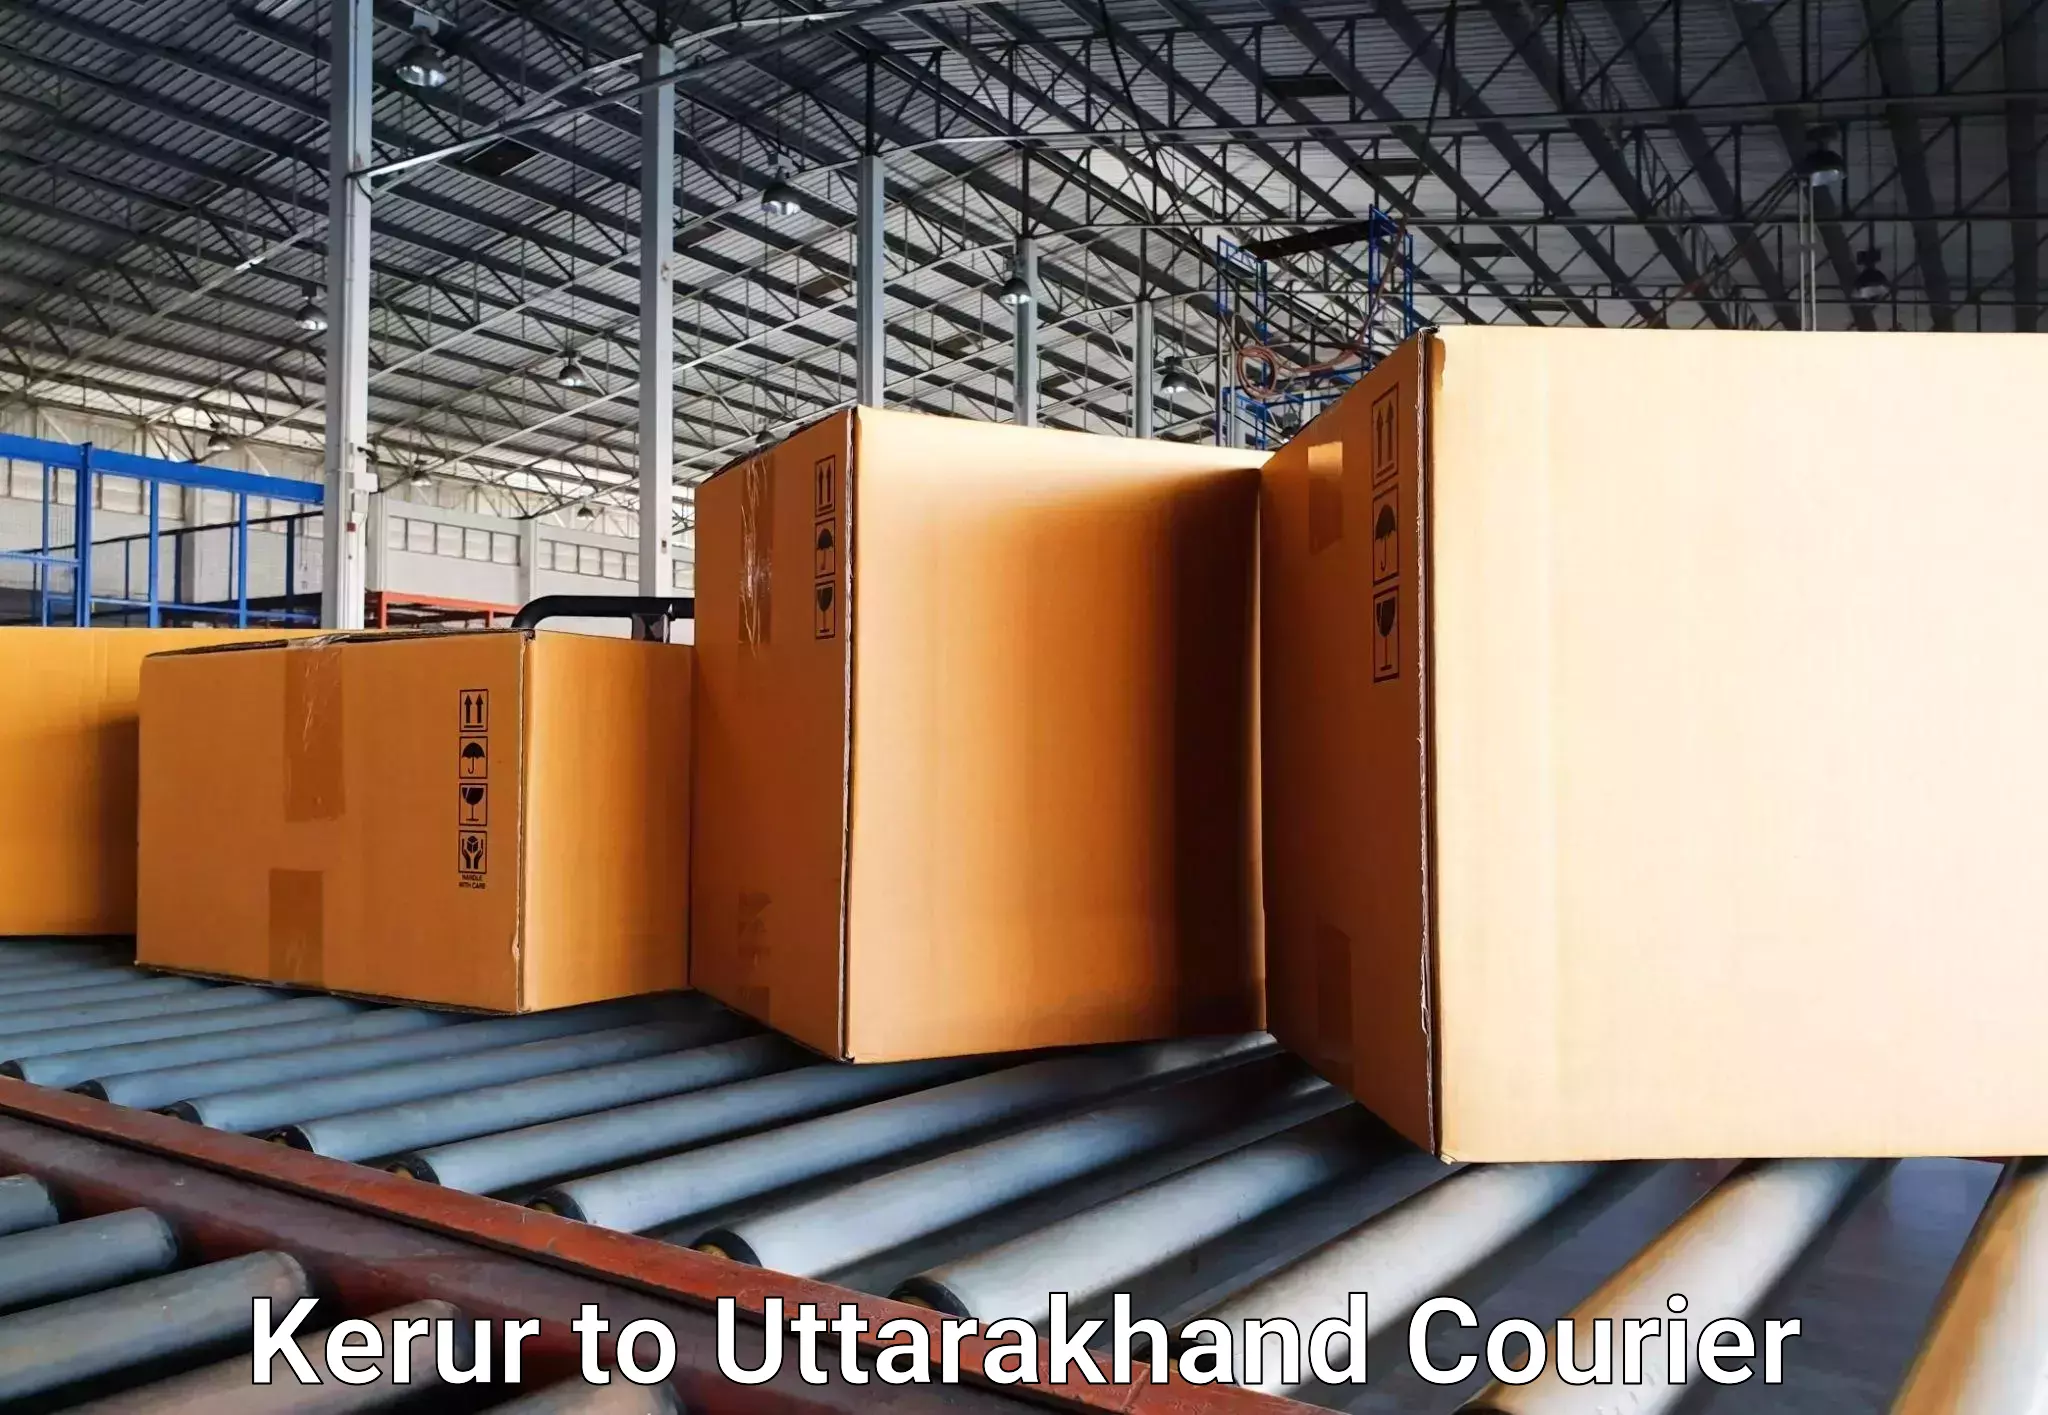 Luggage transport service Kerur to Uttarakhand